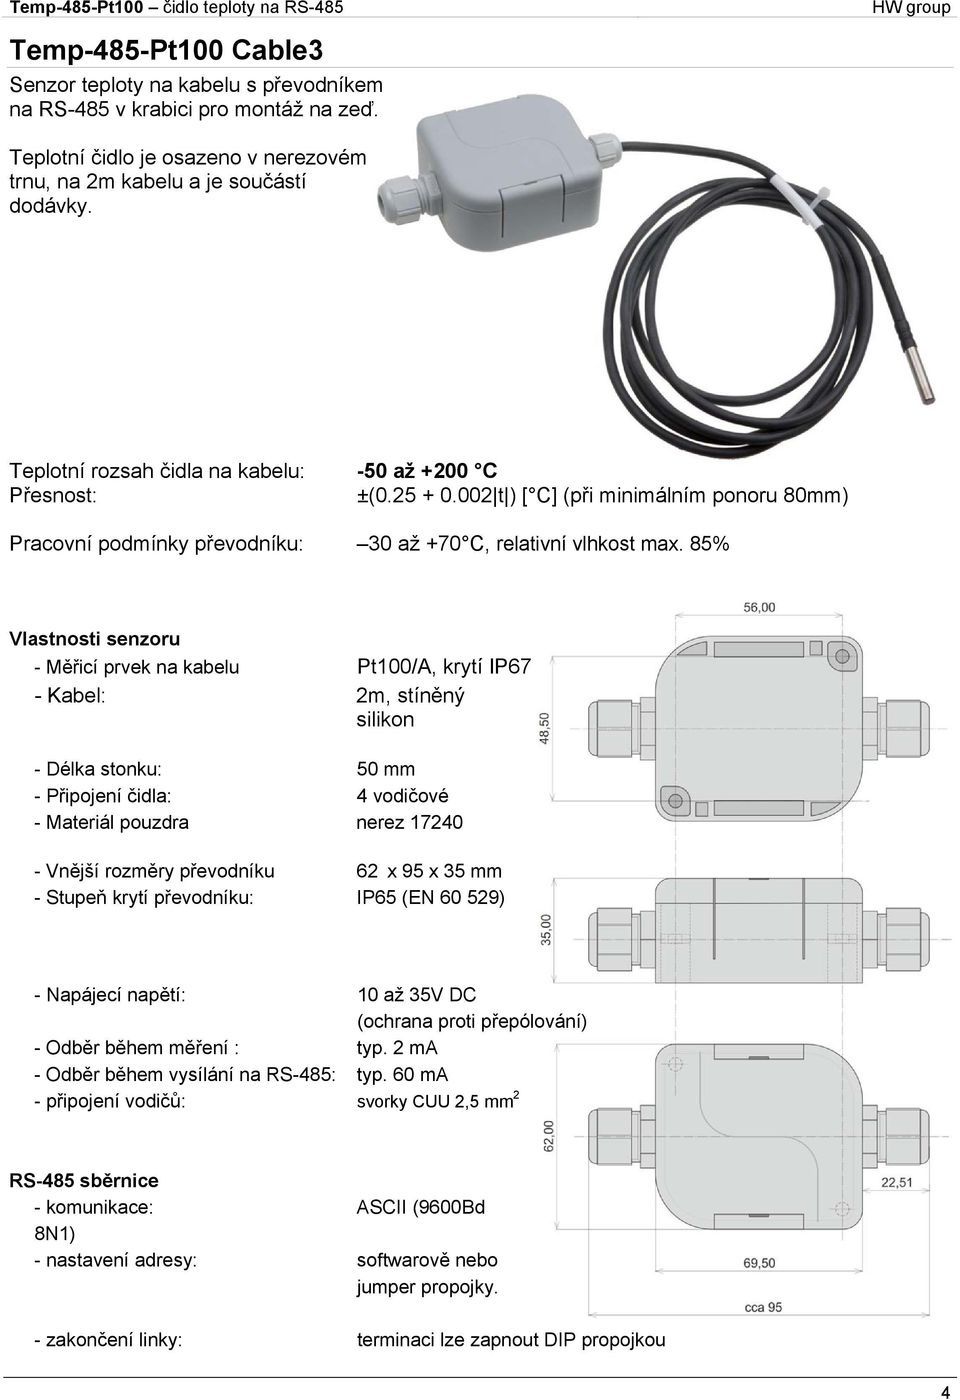 85% Vlastnosti senzoru - Měřicí prvek na kabelu Pt100/A, krytí IP67 - Kabel: 2m, stíněný silikon - Délka stonku: 50 mm - Připojení čidla: 4 vodičové - Materiál pouzdra nerez 17240 - Vnější rozměry